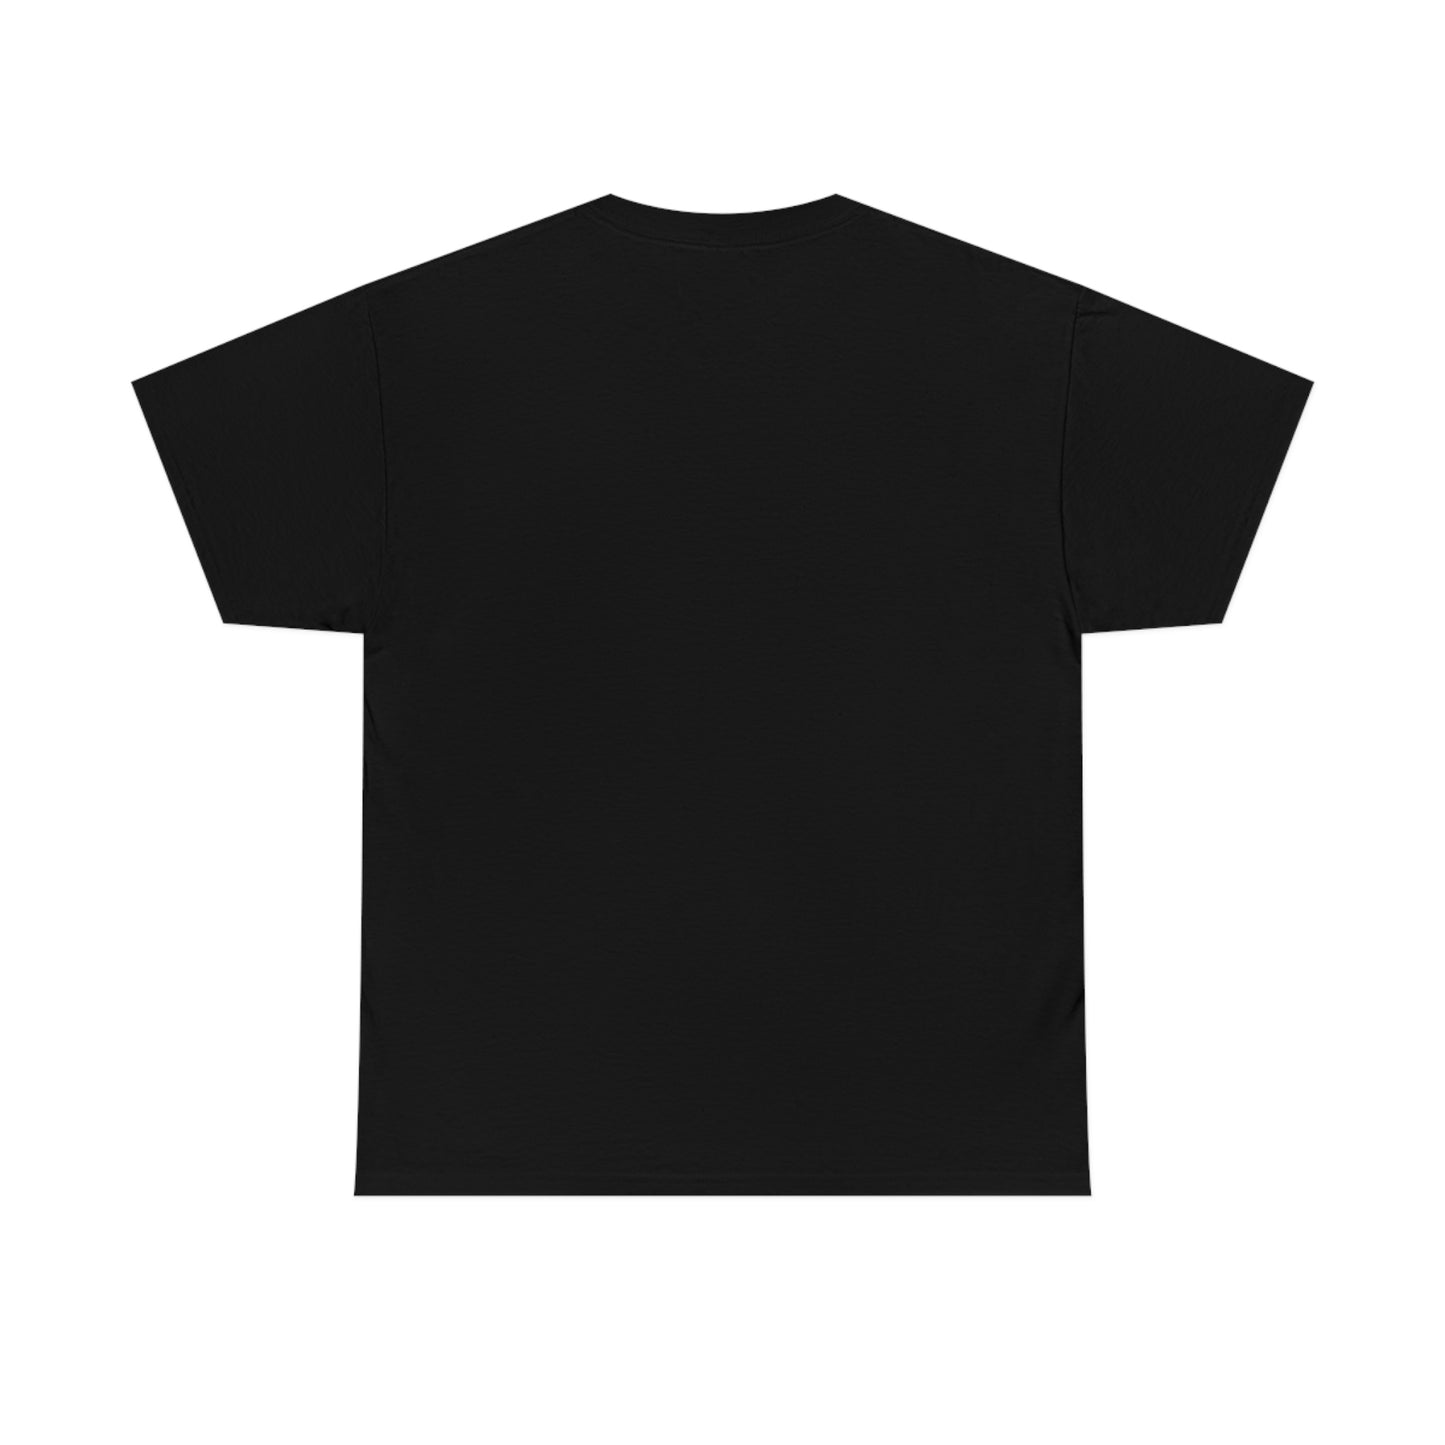 MOONSHOT - Max St. Giovanni T-Shirt